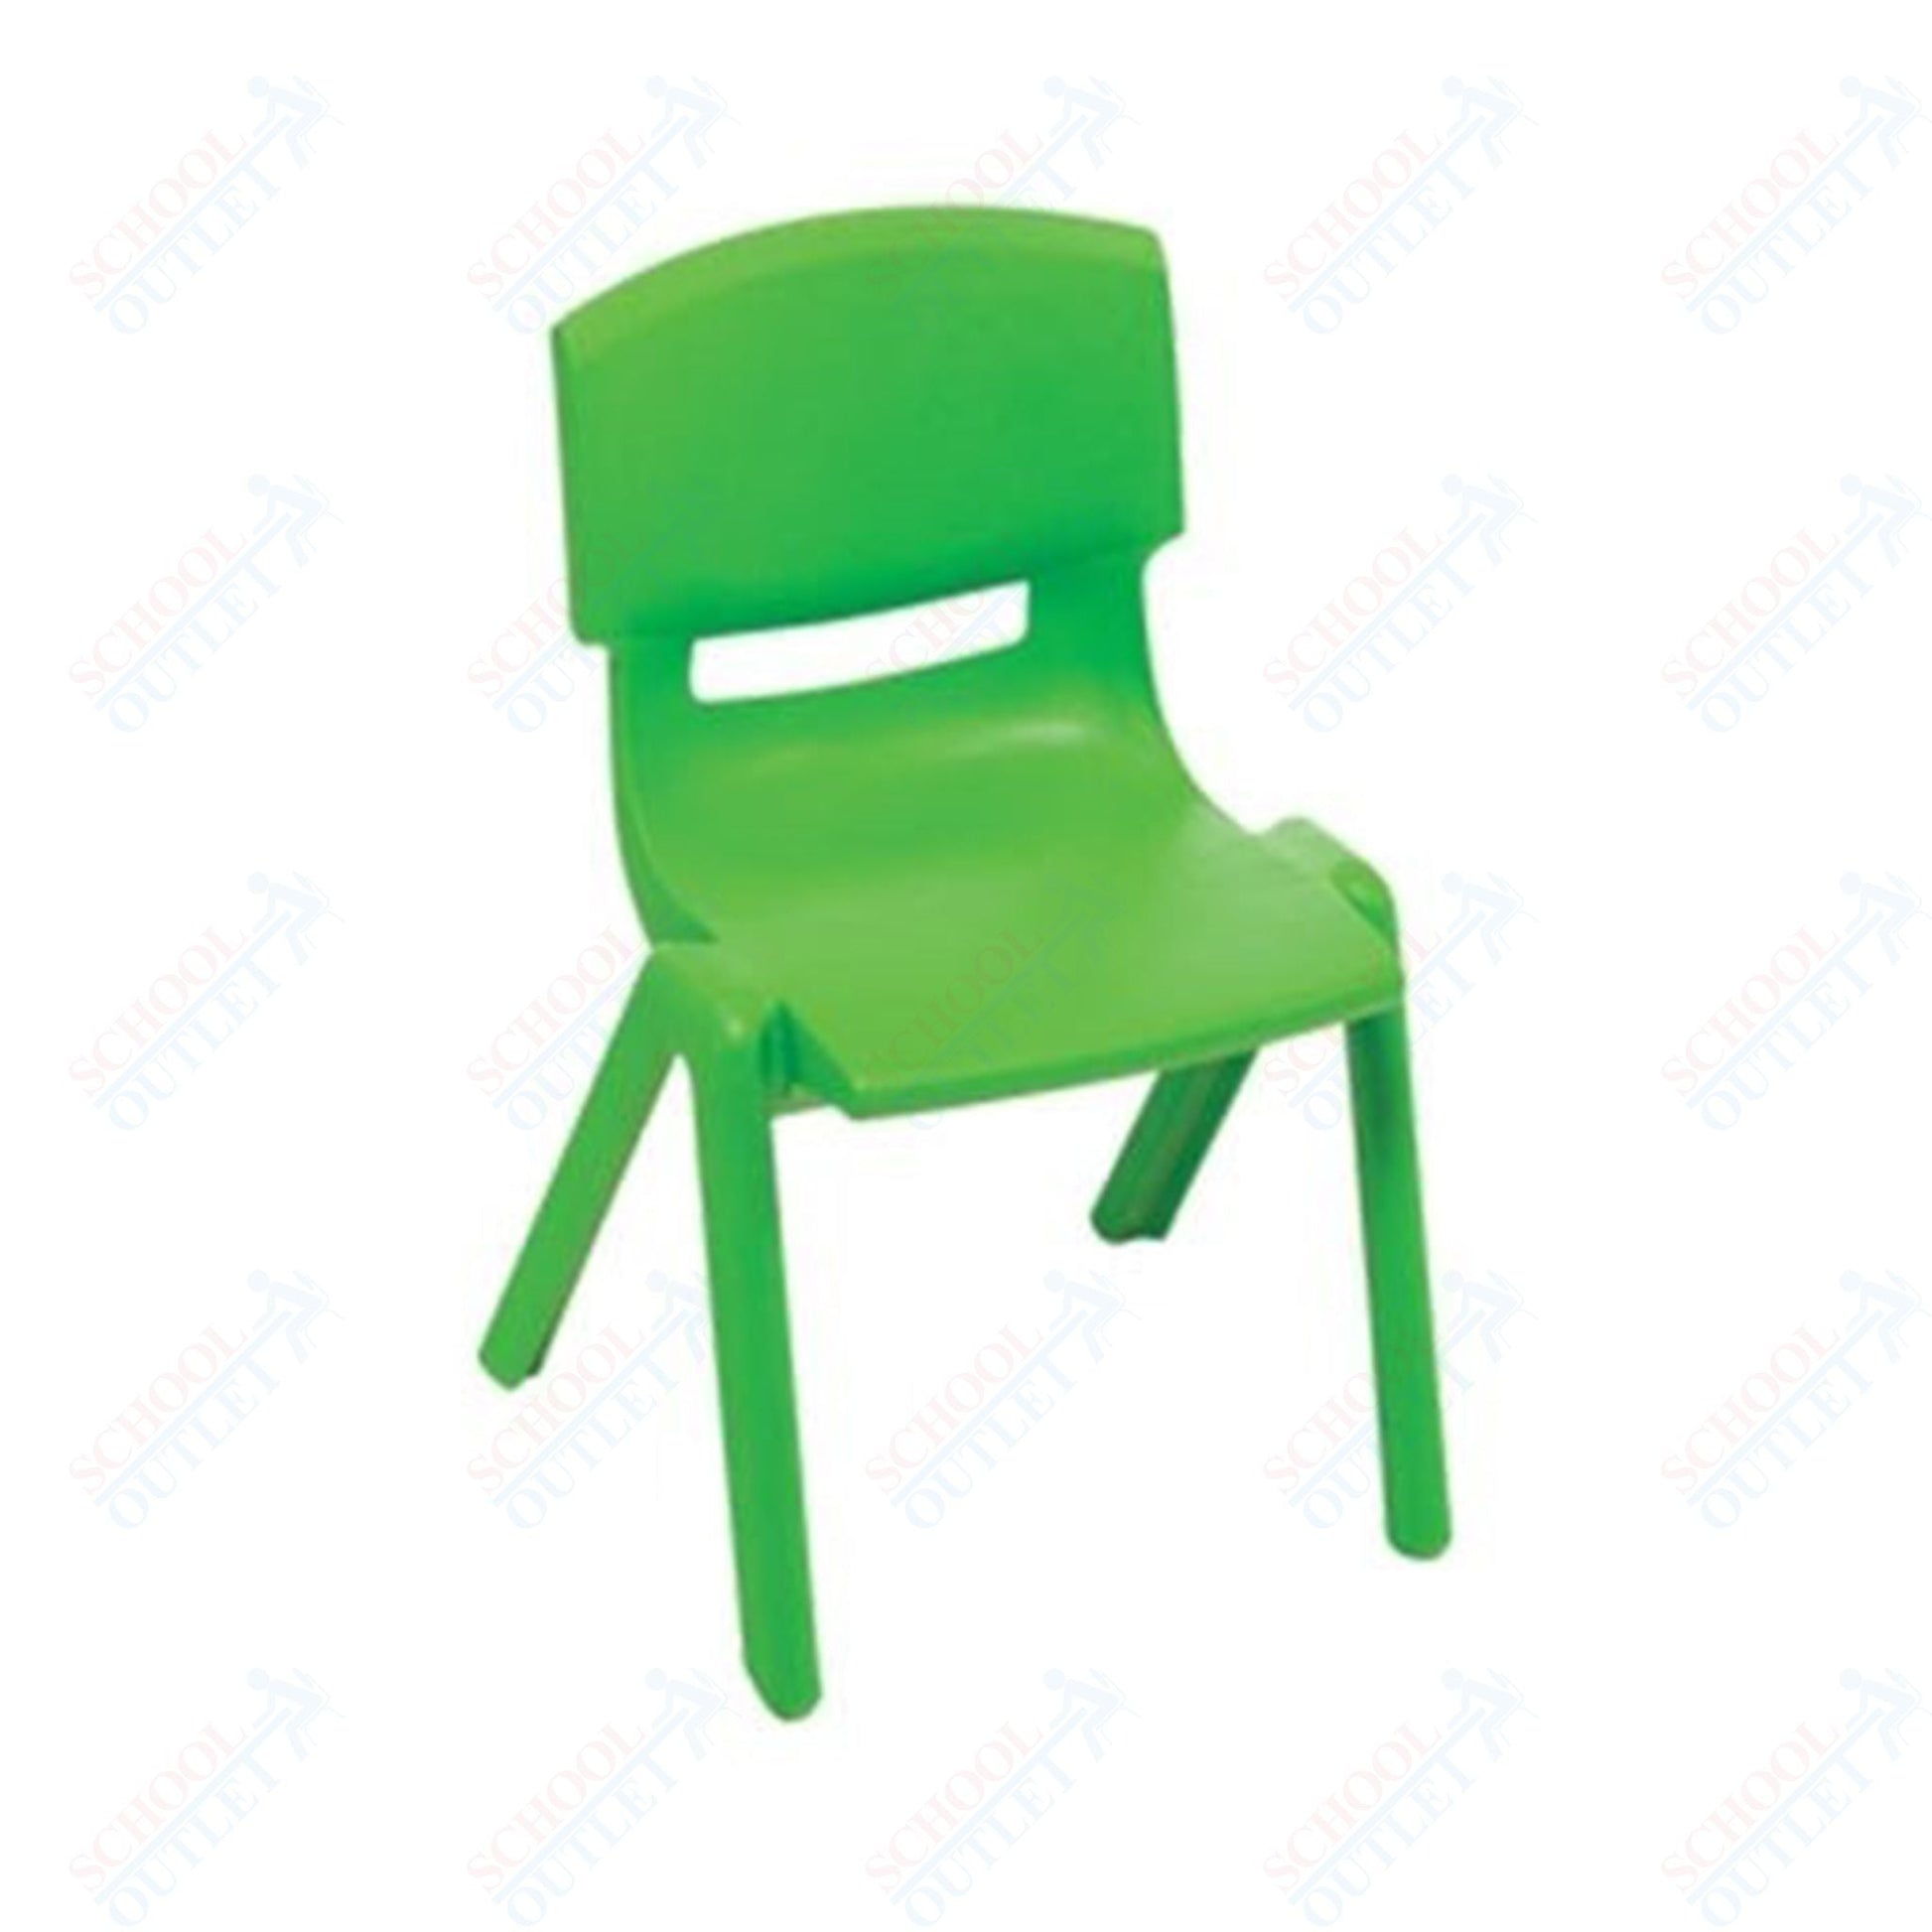 AmTab Classroom School Chair for Kindergarten through 2nd Grade - Stackable - 14.5"W x 15.75"L x 23.25"H - Seat Height 13.5"H (AMT - CLASSCHAIR - 3) - SchoolOutlet